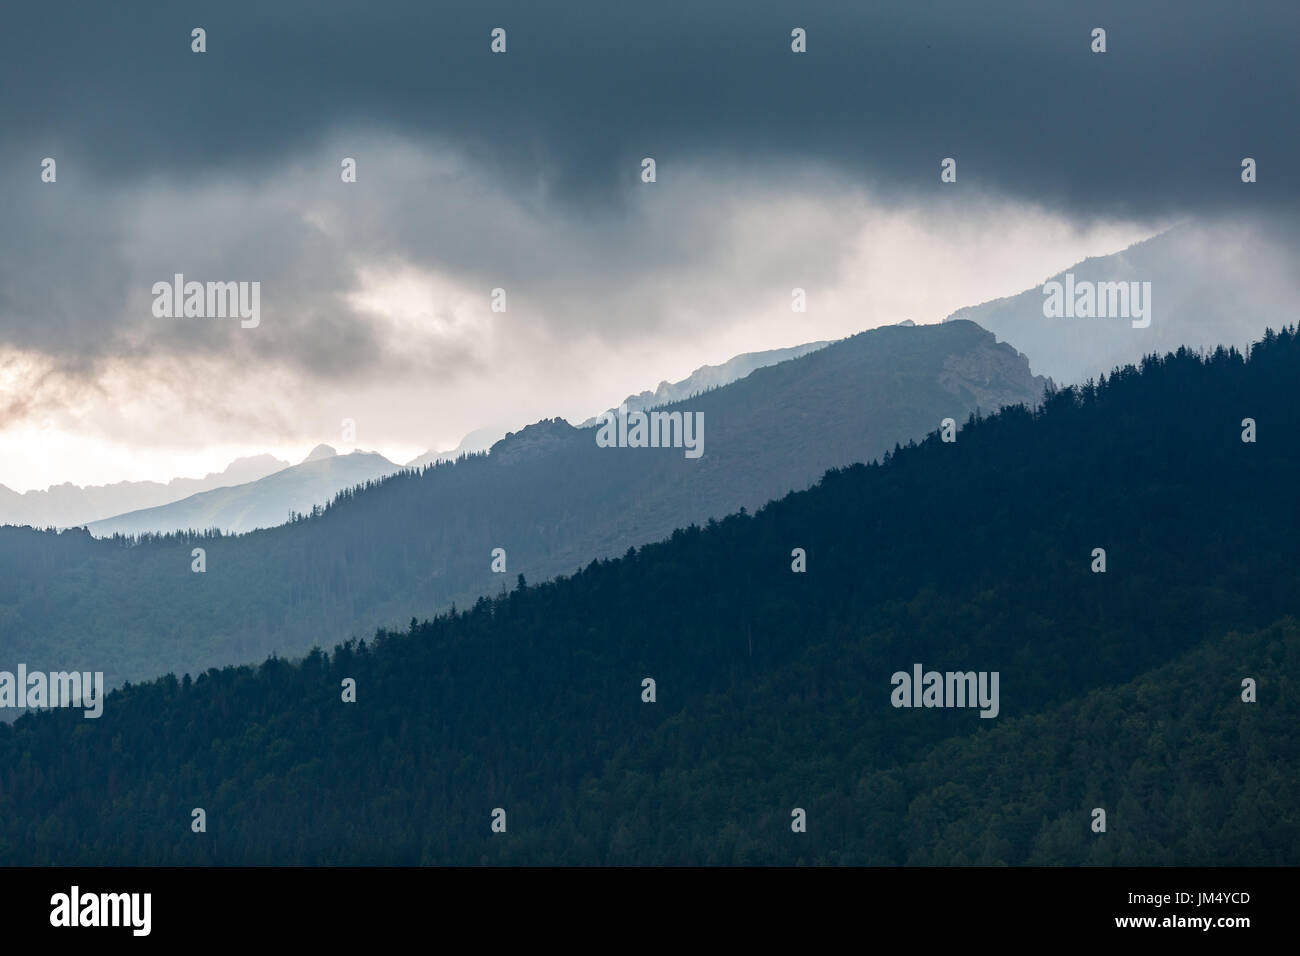 Paysage Montagnes inspirante, jour nuageux en été Tatras, de bois et de crête de montagne plus de ciel nuageux, Slovaquie Banque D'Images